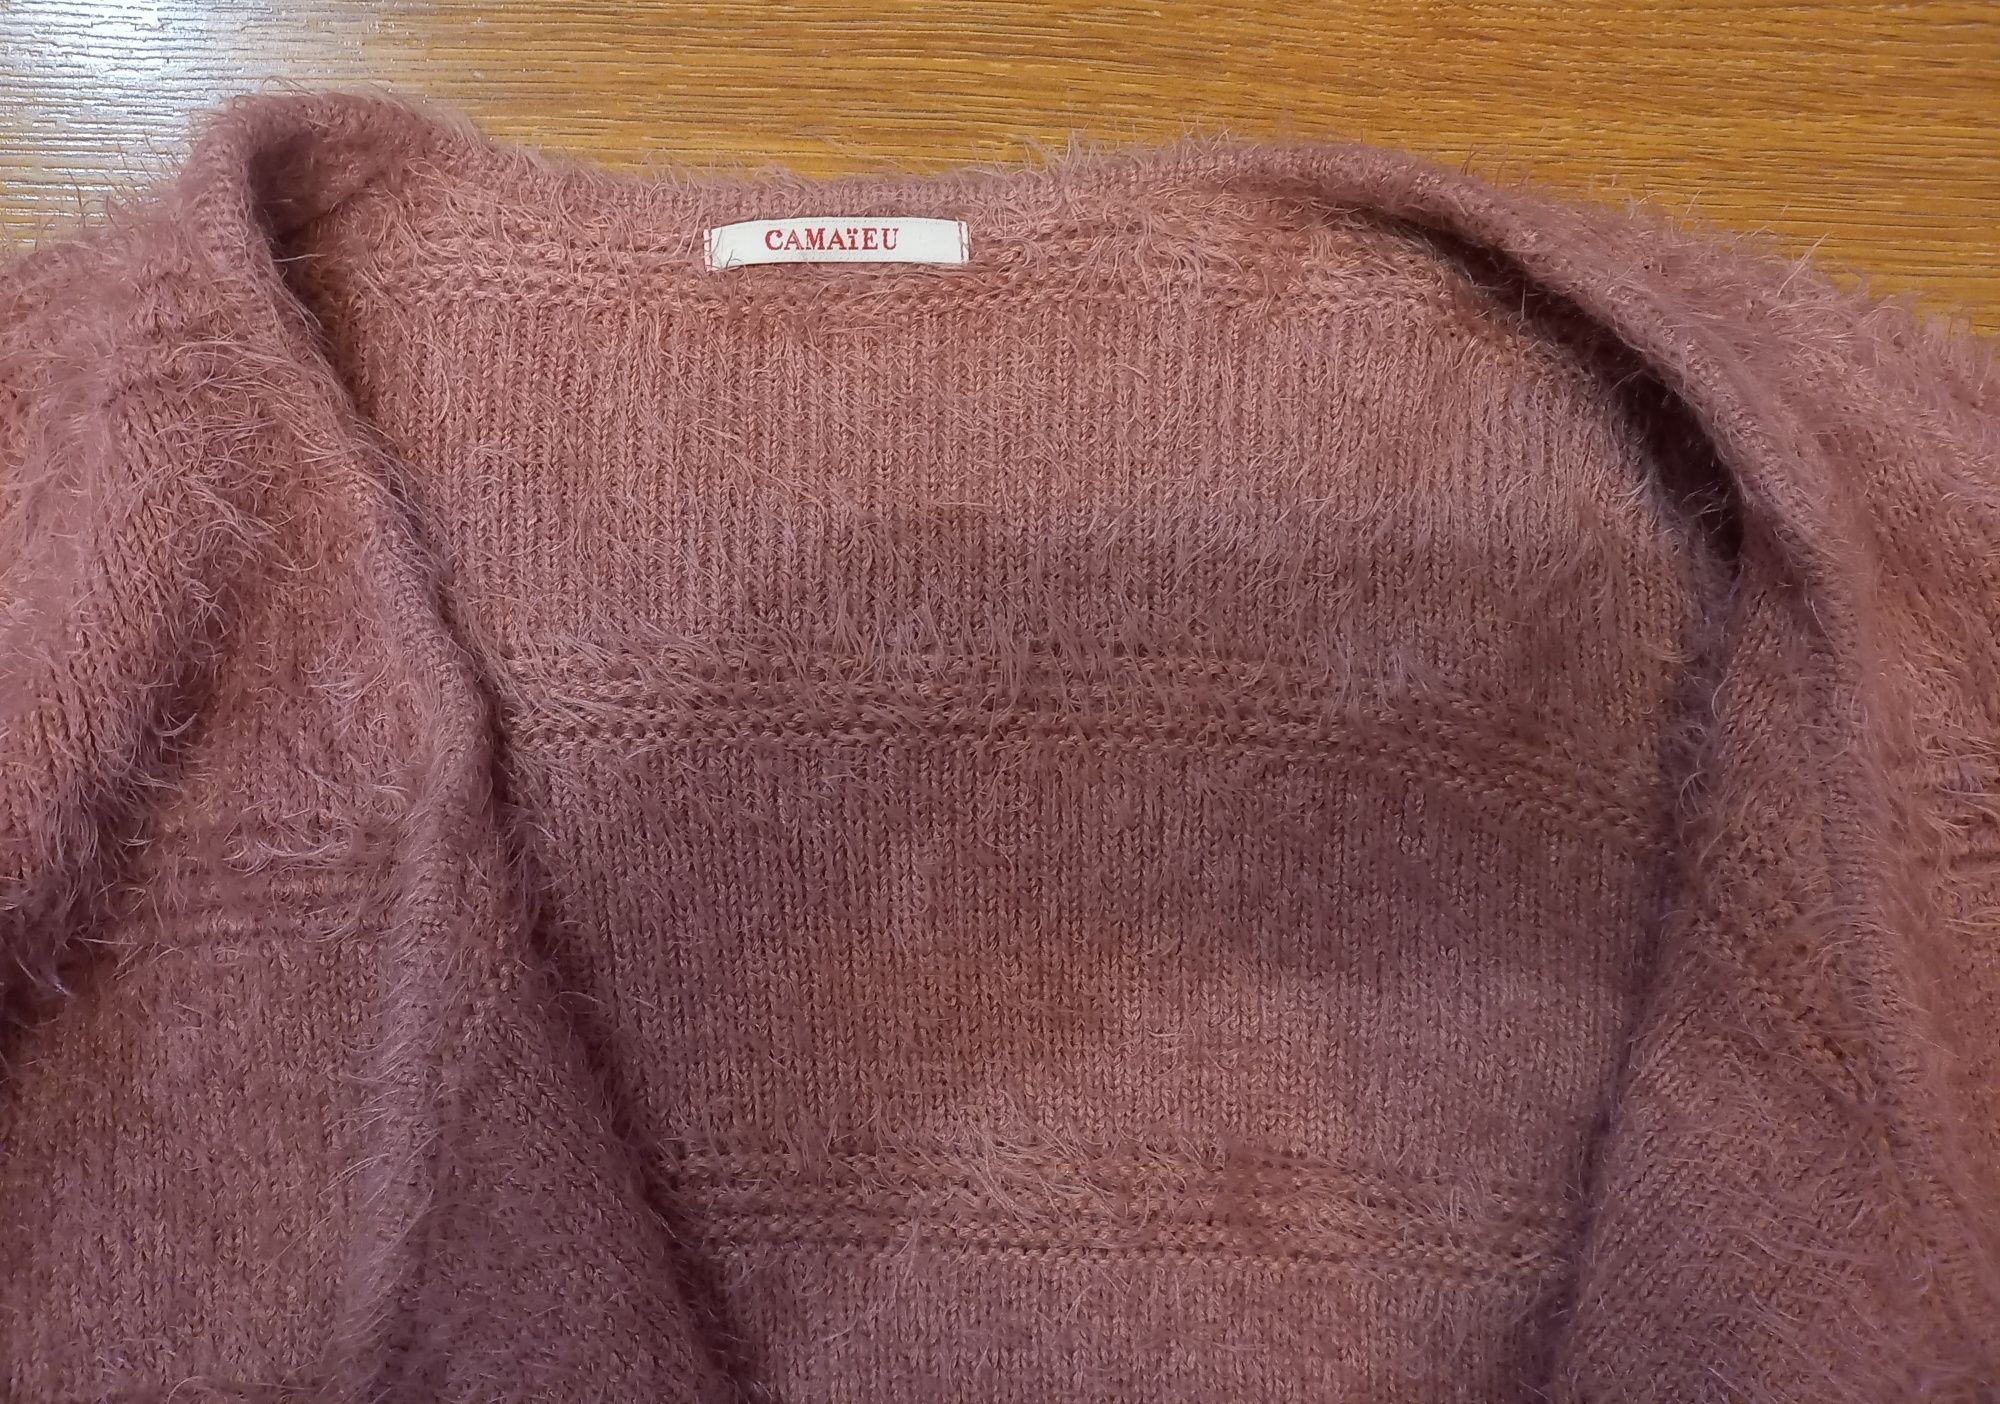 Sweter rozpinany, Rozm M, Cameieu- róż angielski